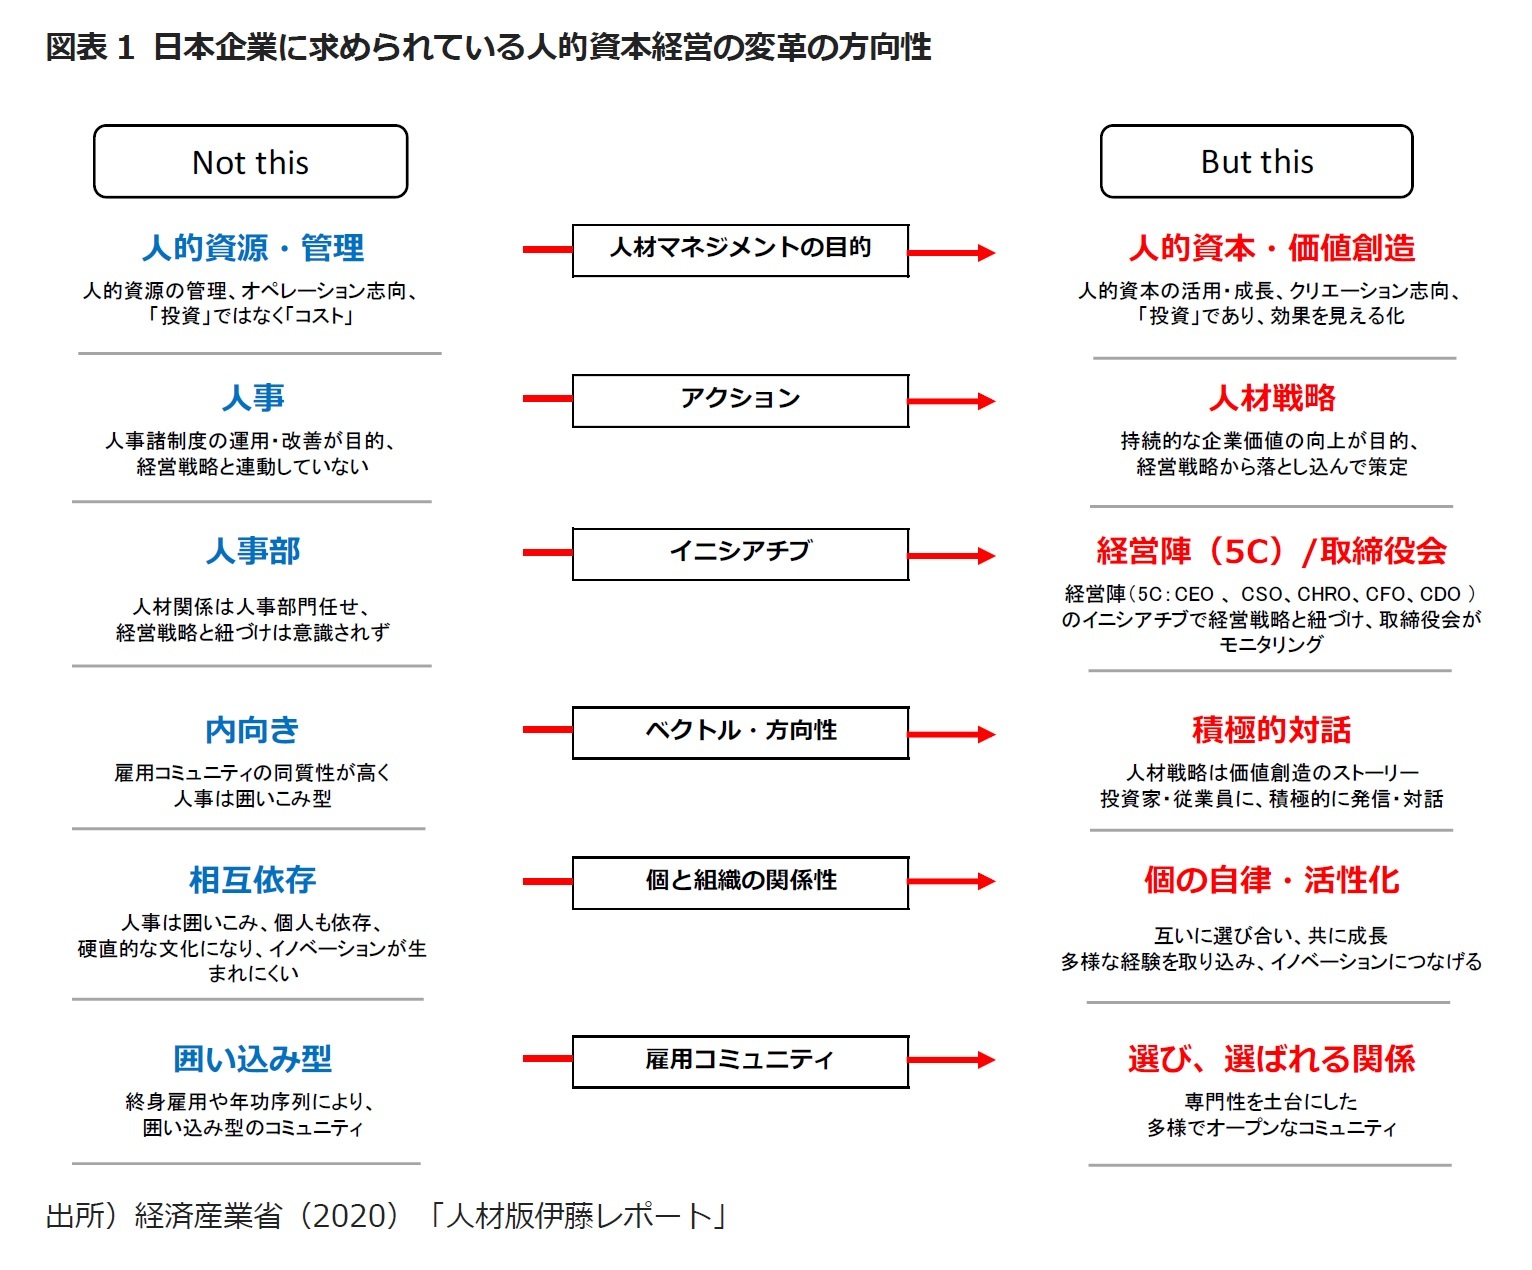 図表1 日本企業に求められている人的資本経営の変革の方向性